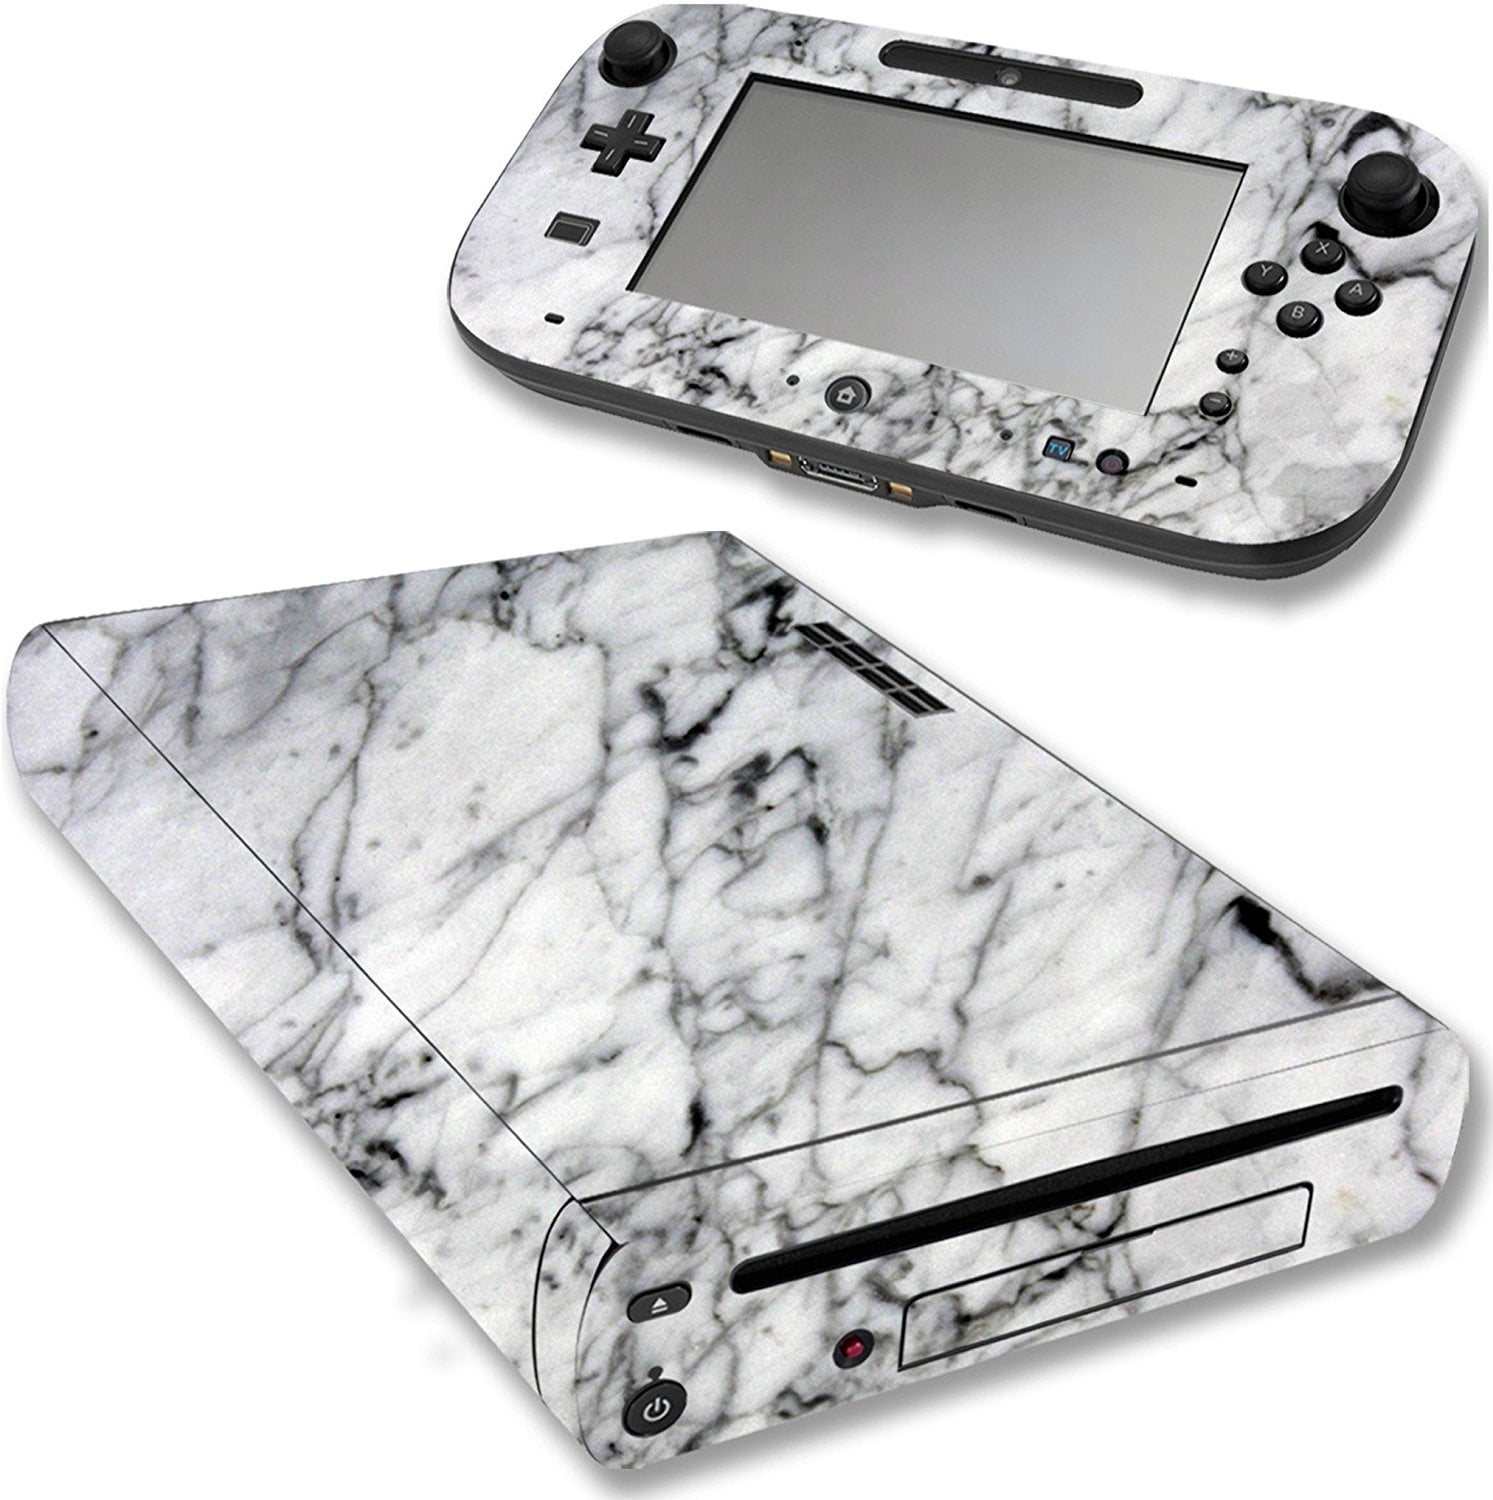 Vwaq Wii U Console Marble Skin Nintendo Wii U Decal Sticker Covers